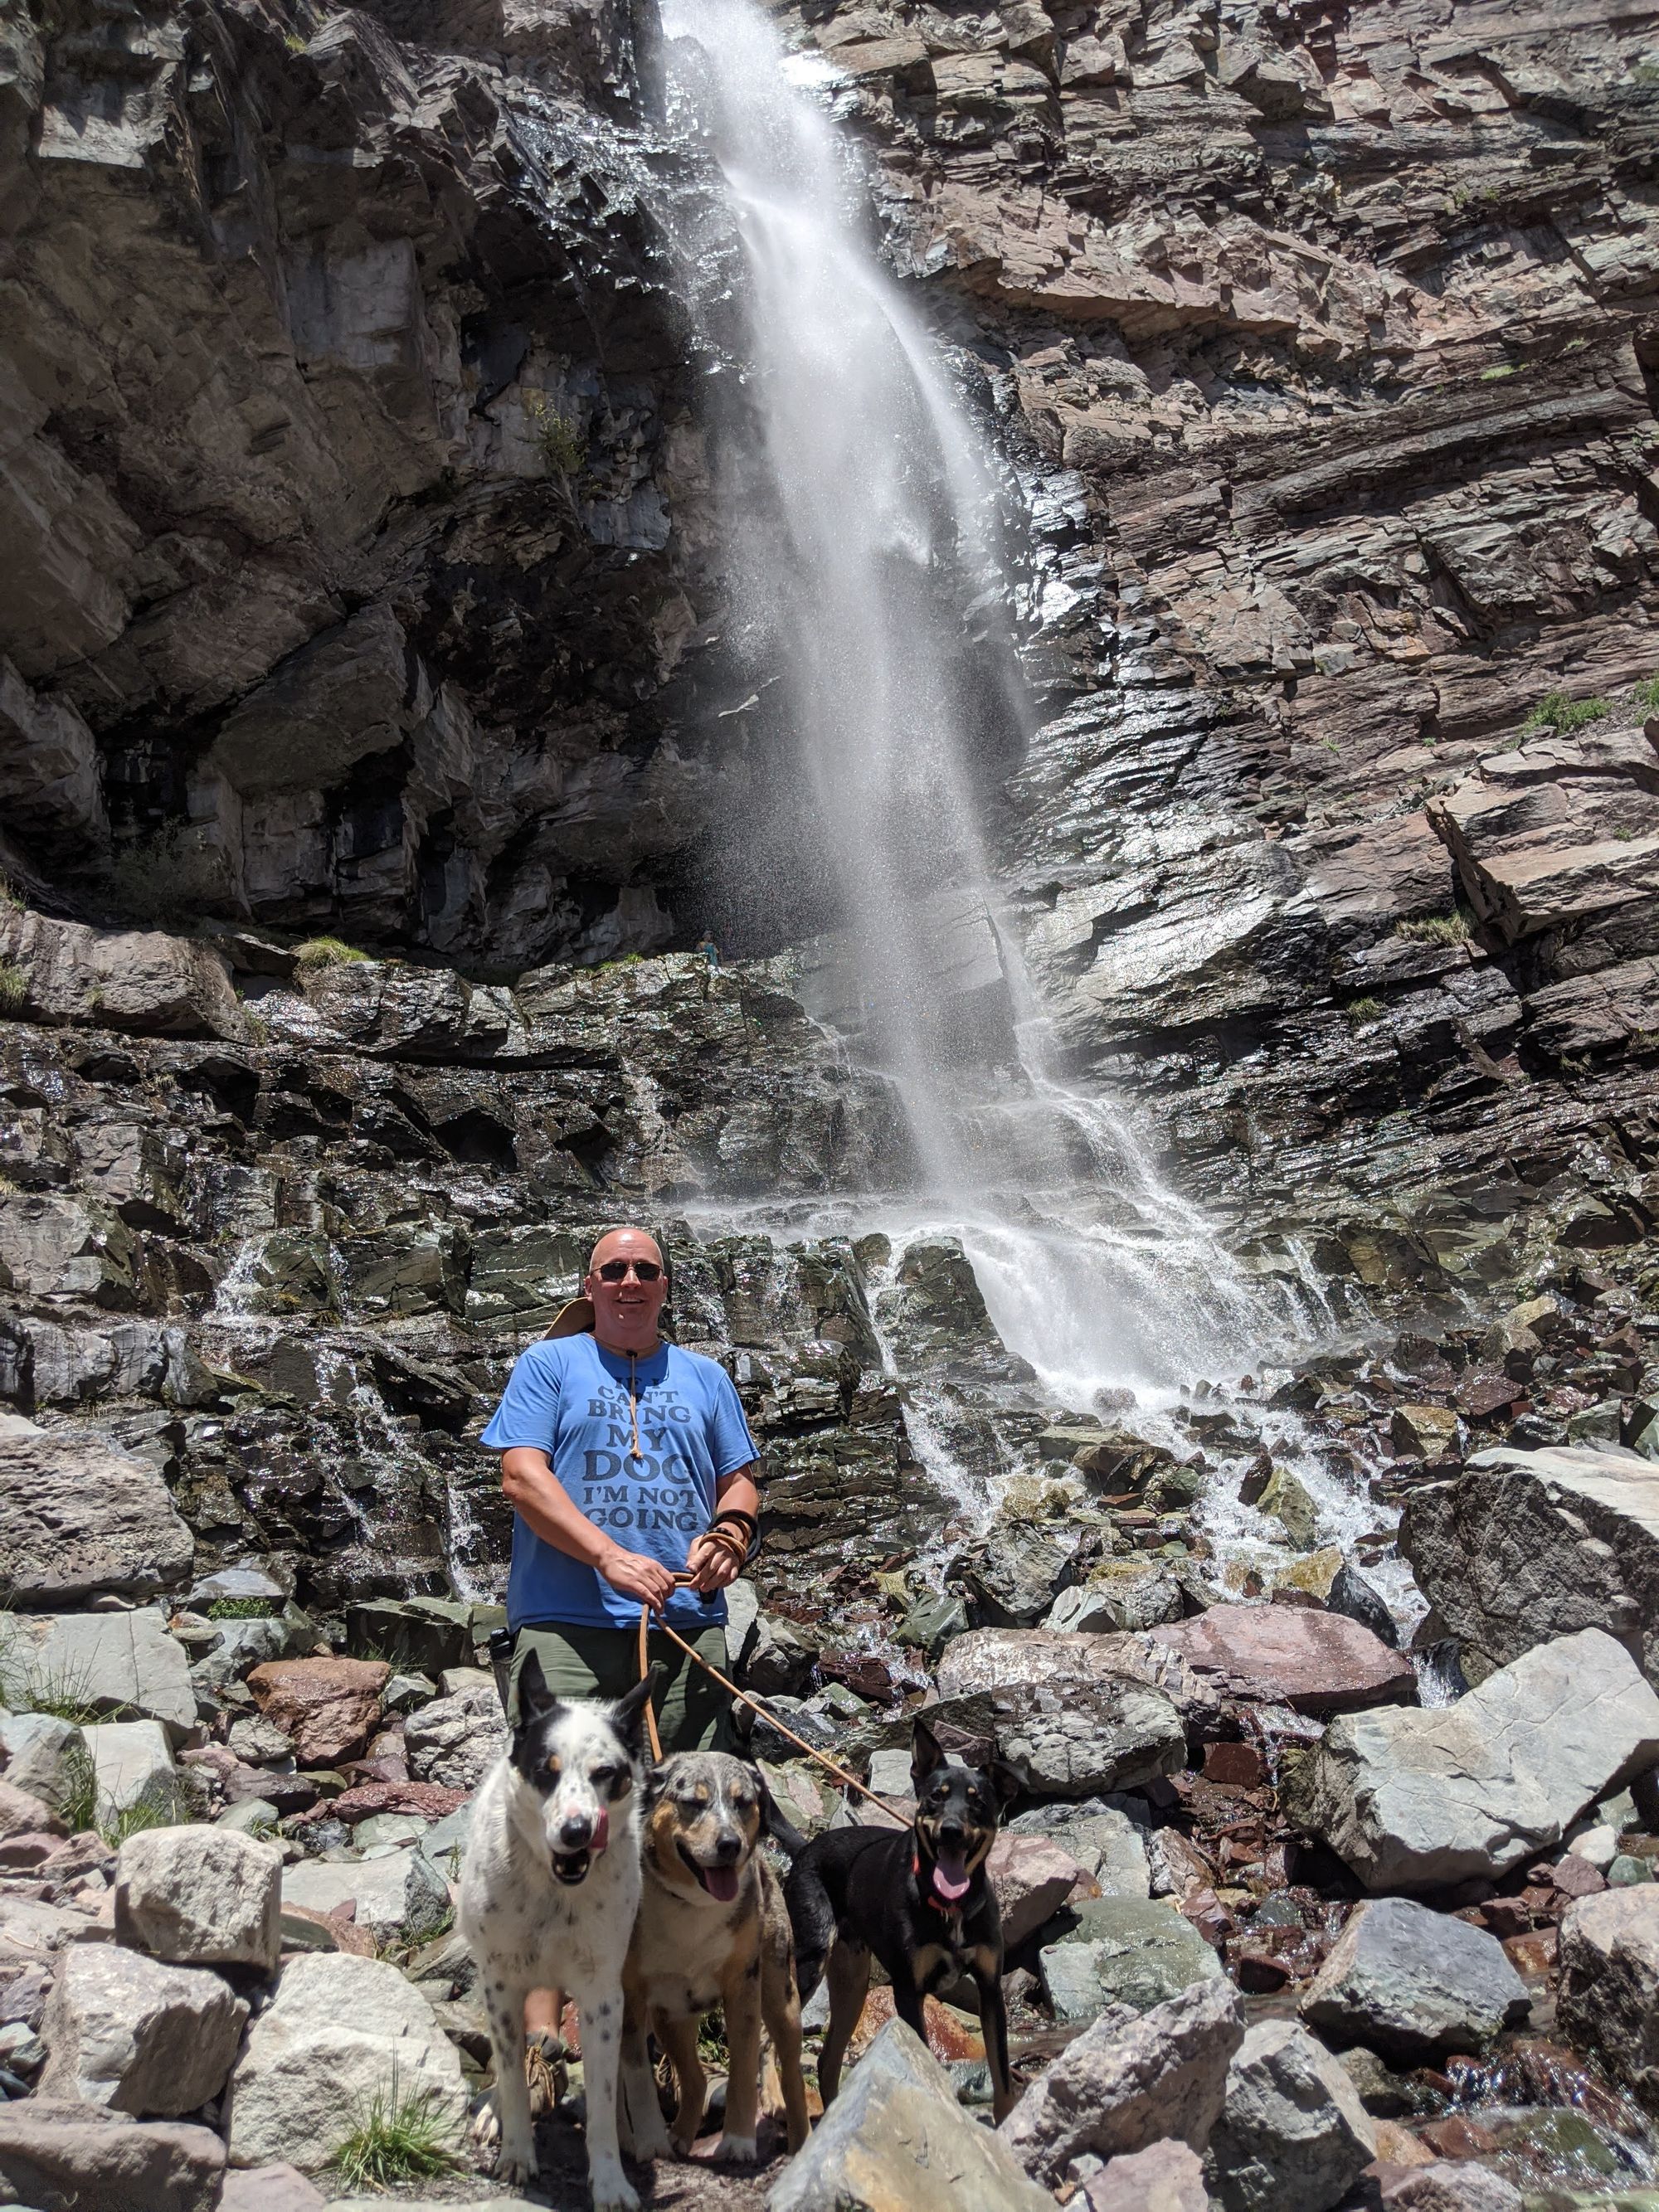 Exploring Dog-Friendly Silverton & Ouray, CO